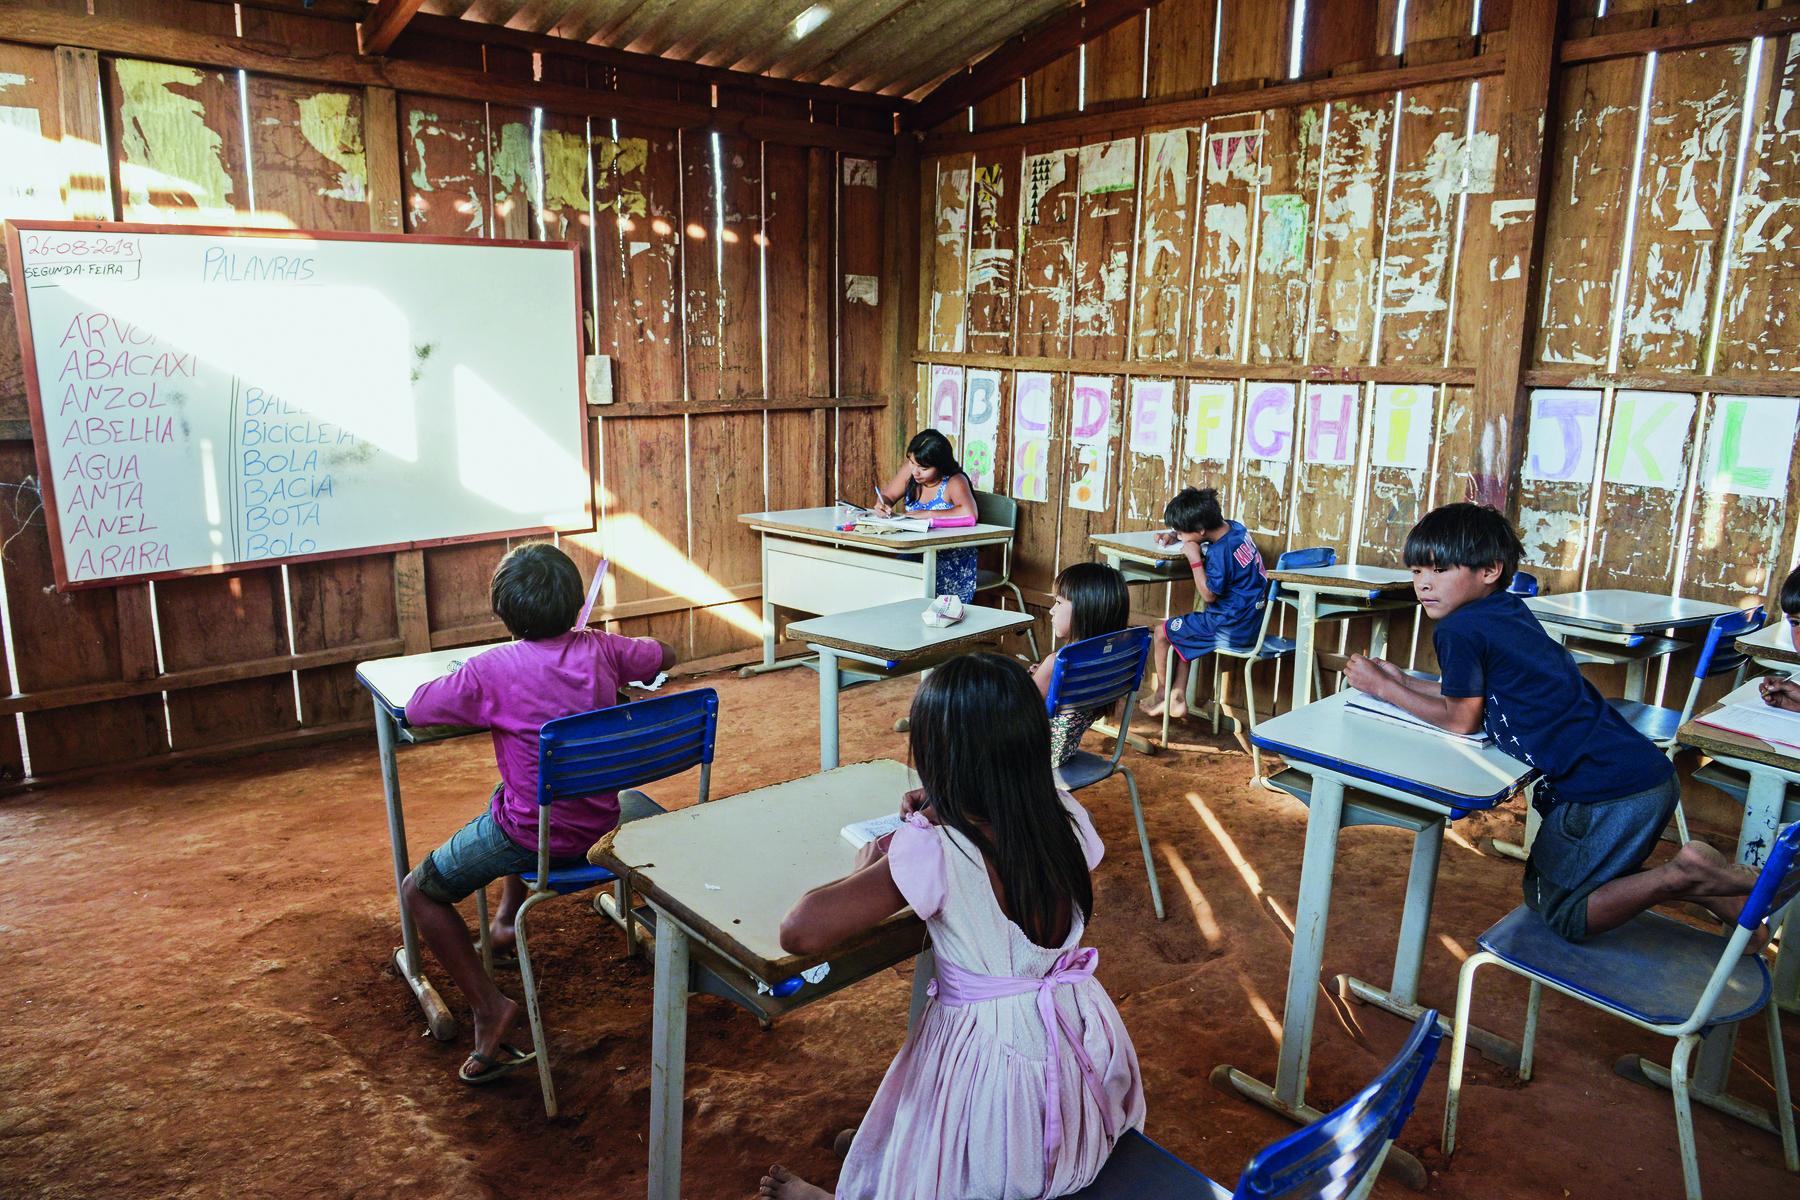 Fotografia. Sala de aula com o chão de terra e as paredes feitas com placas de madeira fina. Os alunos são crianças indígenas, e estão sentados em carteiras escolares. Estão de frente para uma lousa branca. No canto da sala, uma professora indígena sentada à mesa.